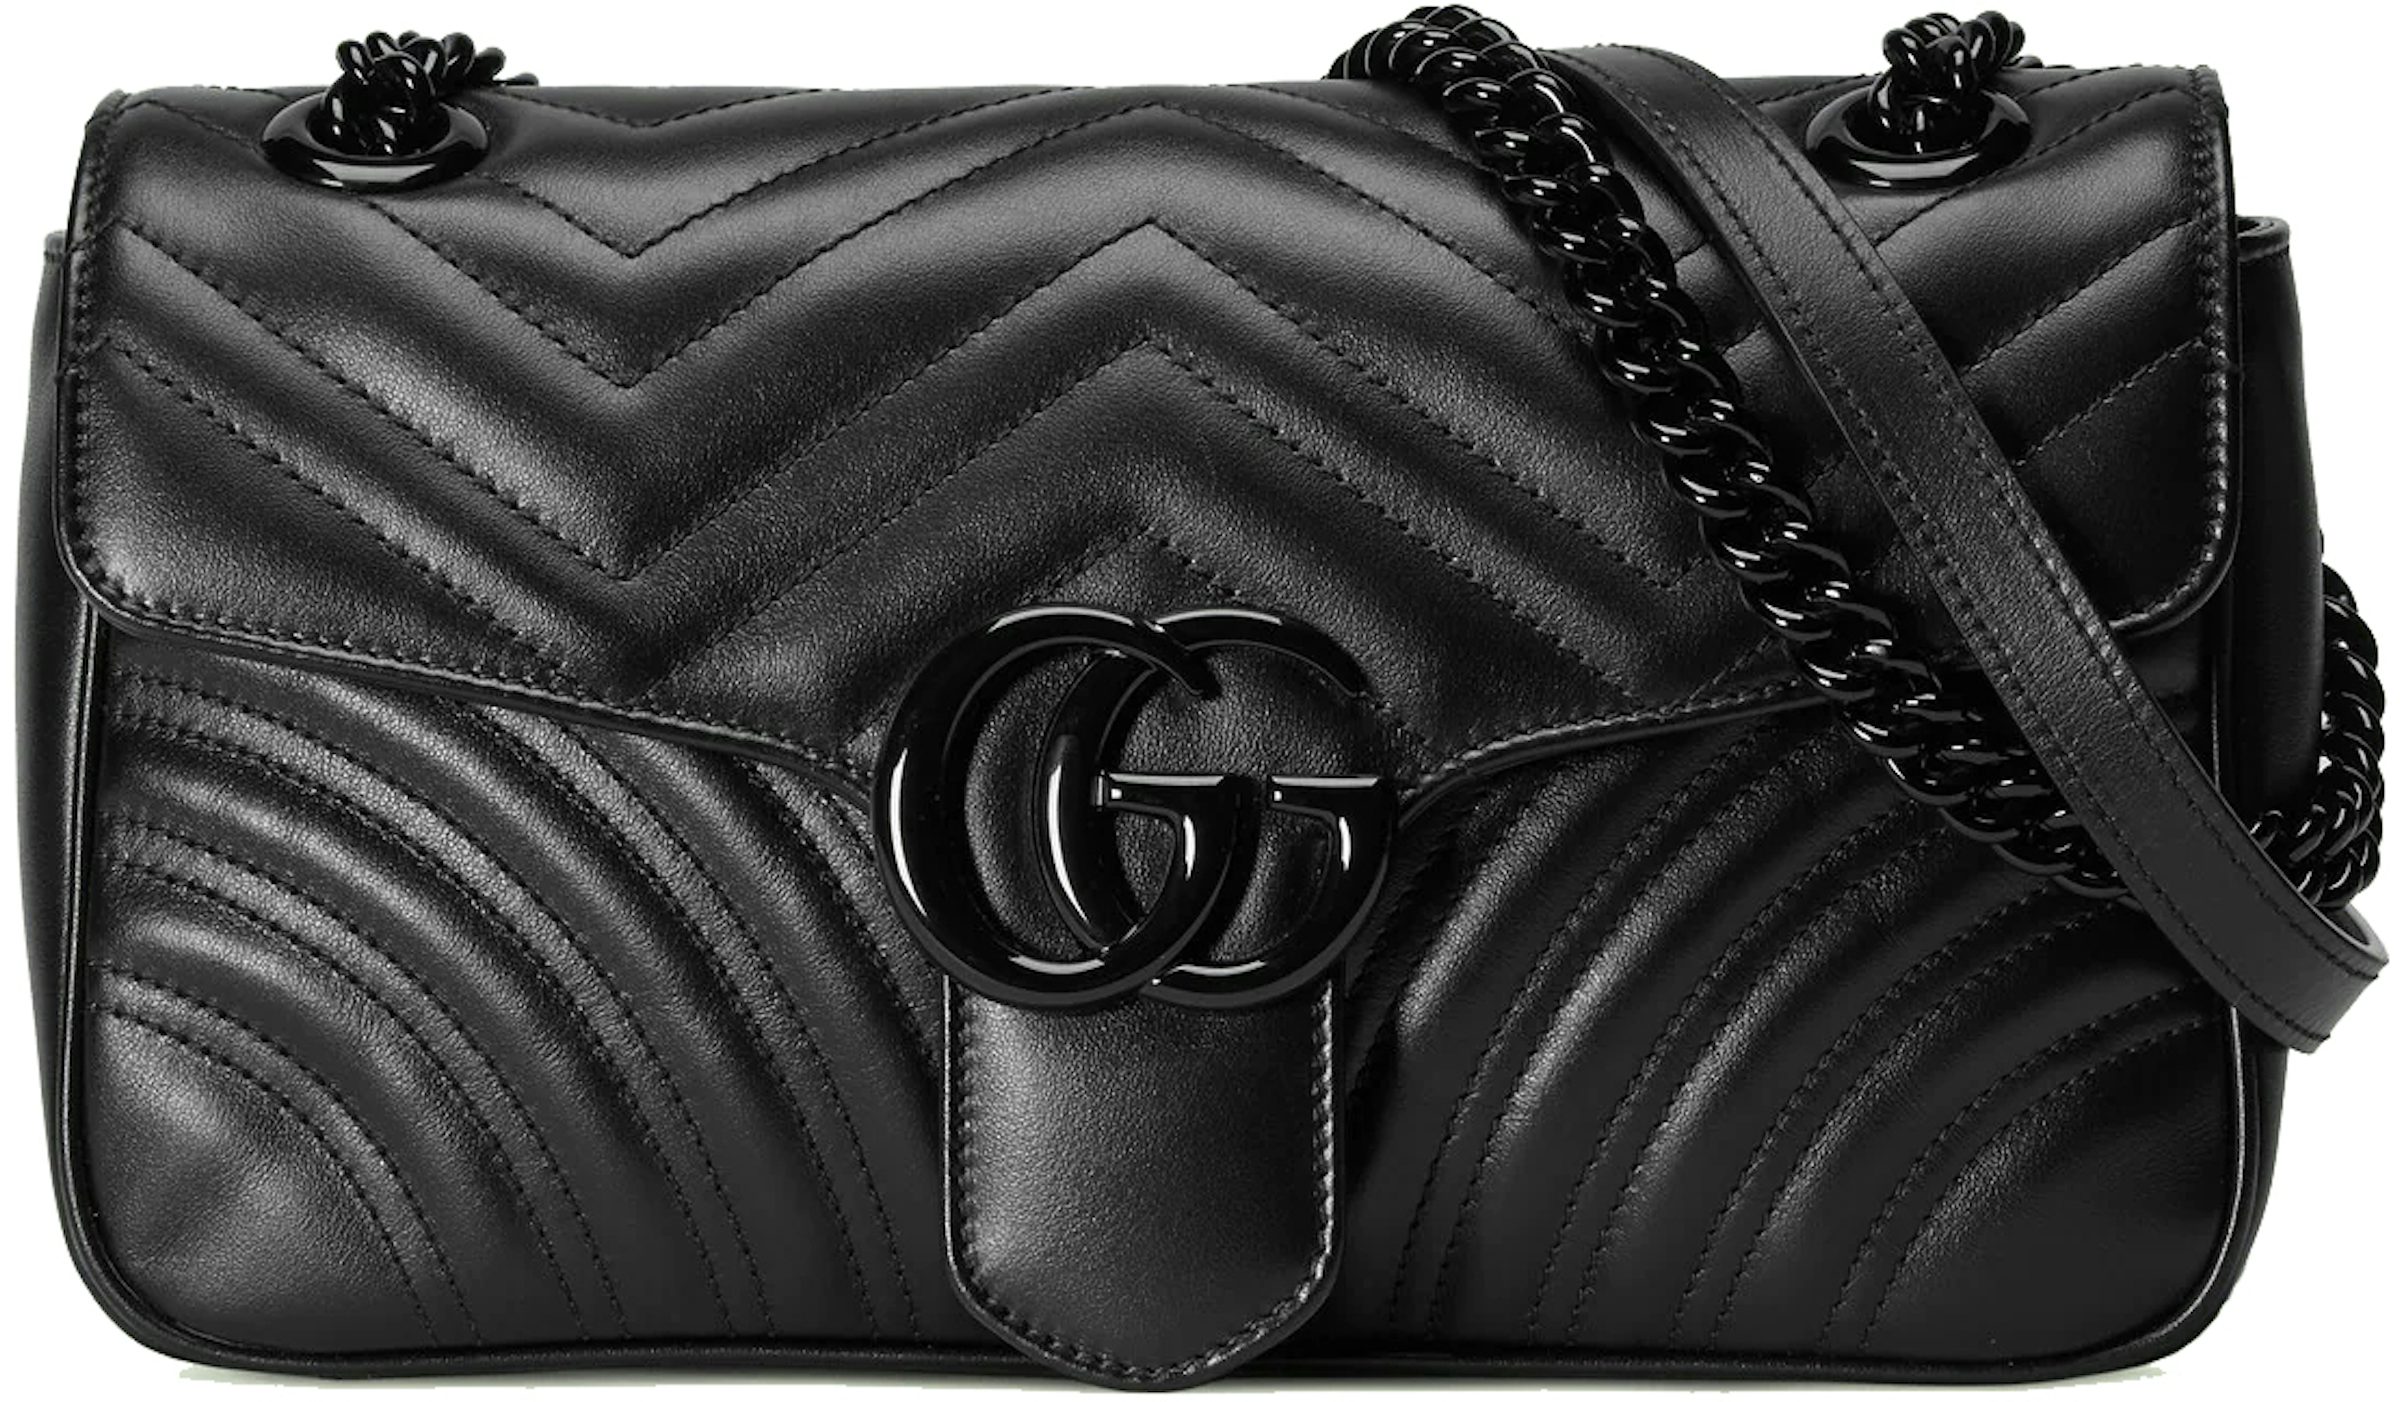 GG Matelasse Leather Shoulder Bag in Black - Gucci